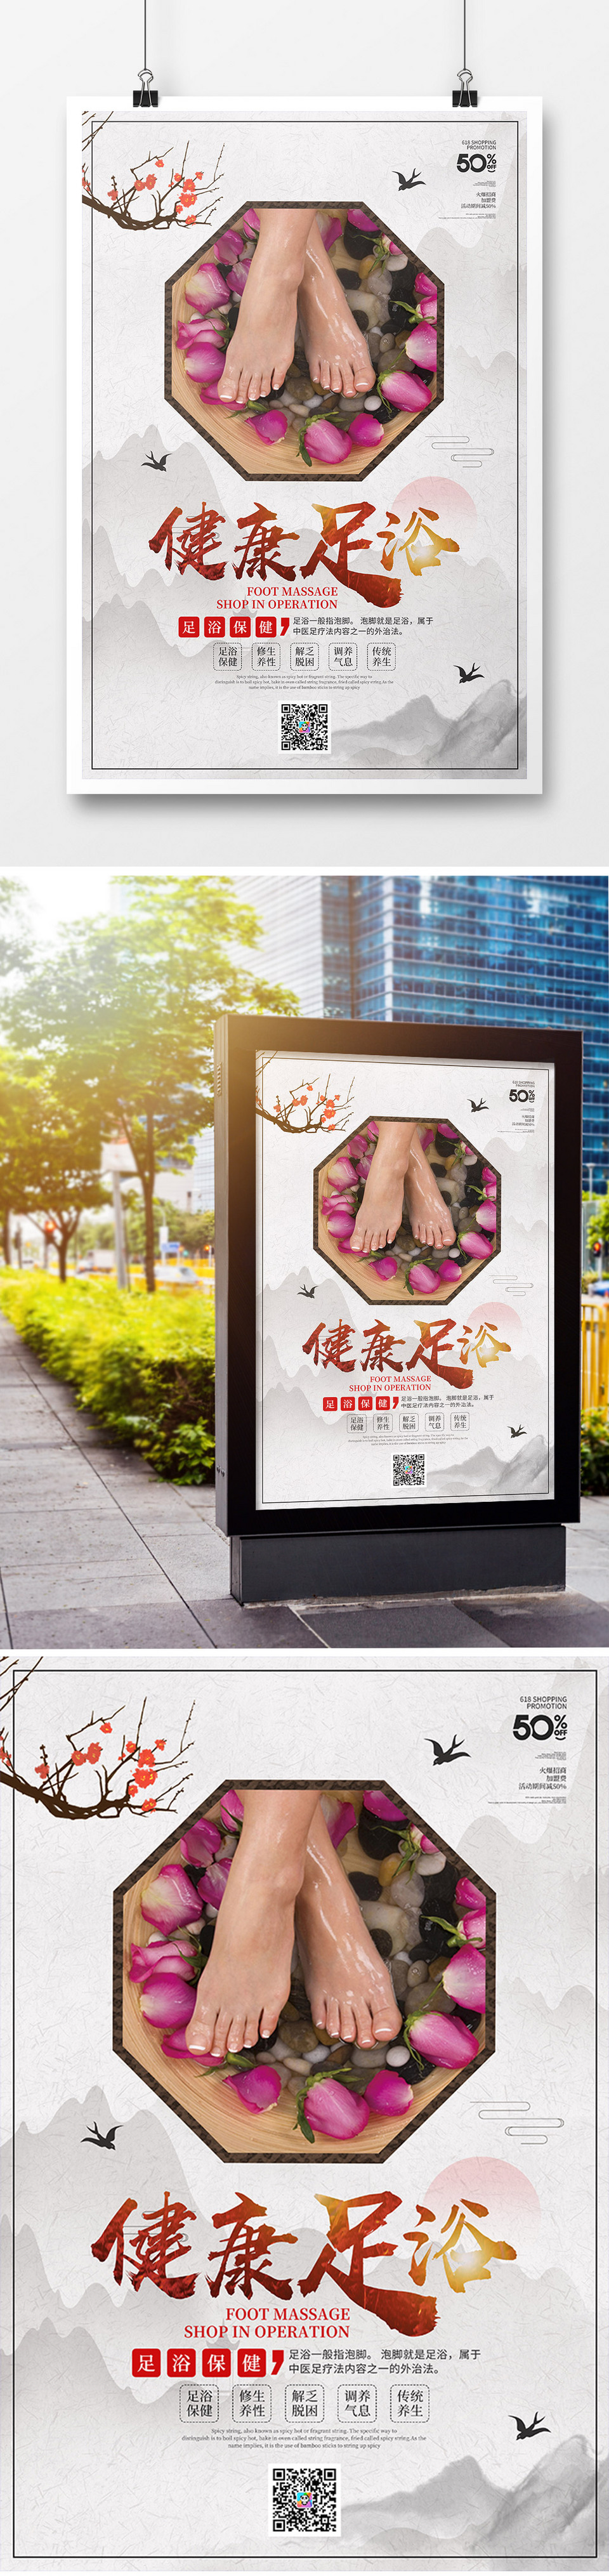 中国风健康足浴养生宣传海报